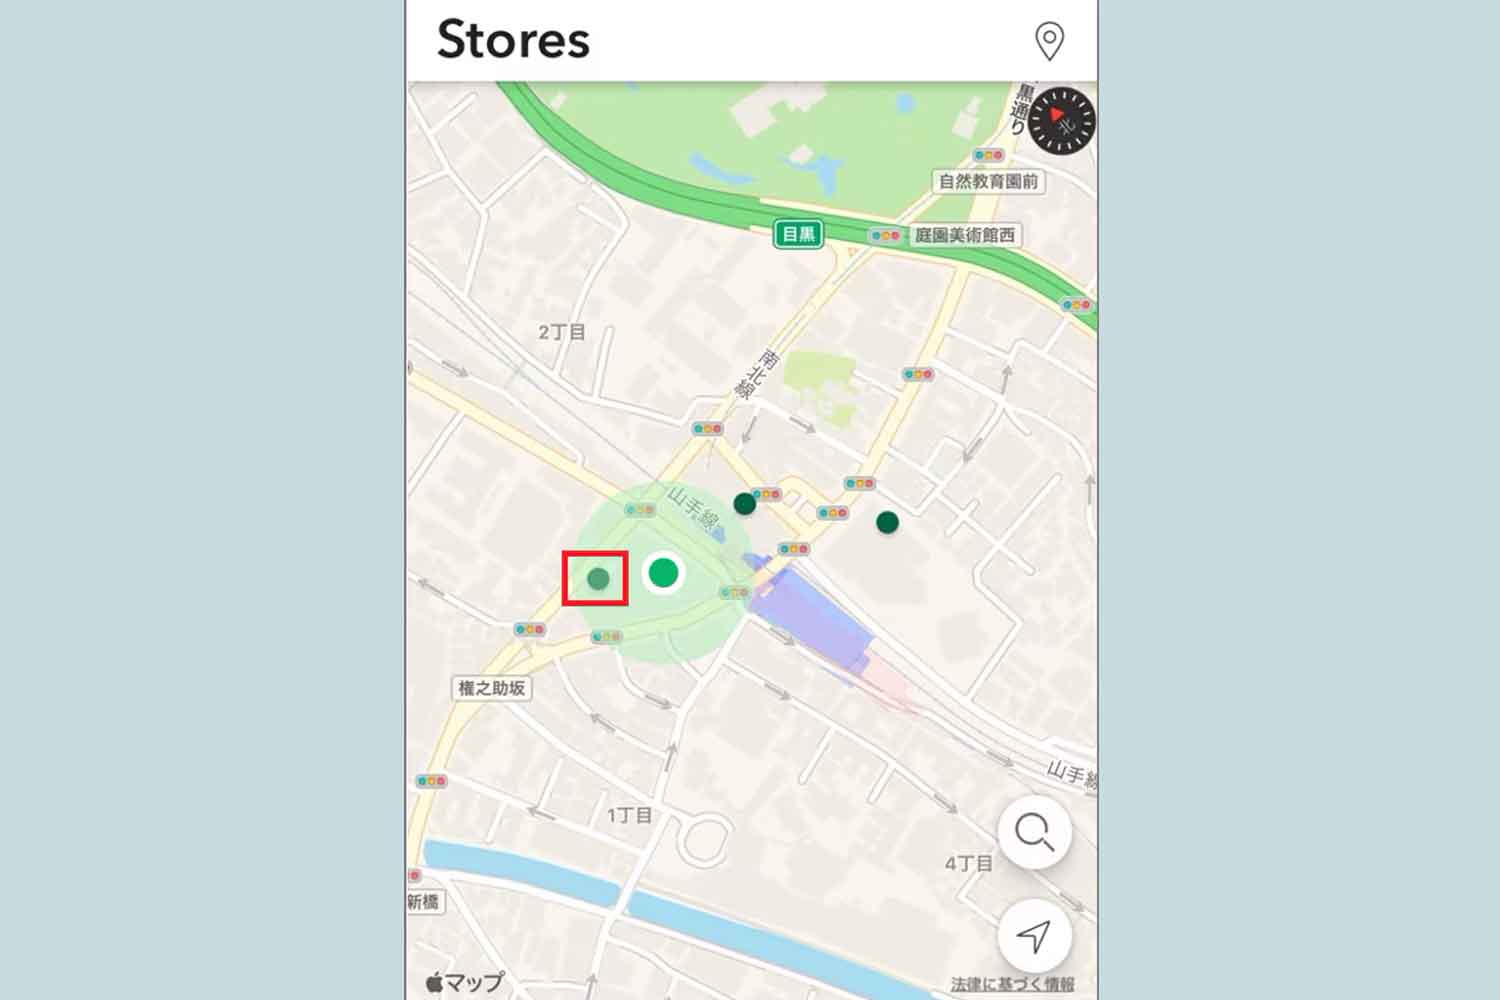 スターバックス公式アプリの店舗検索画面